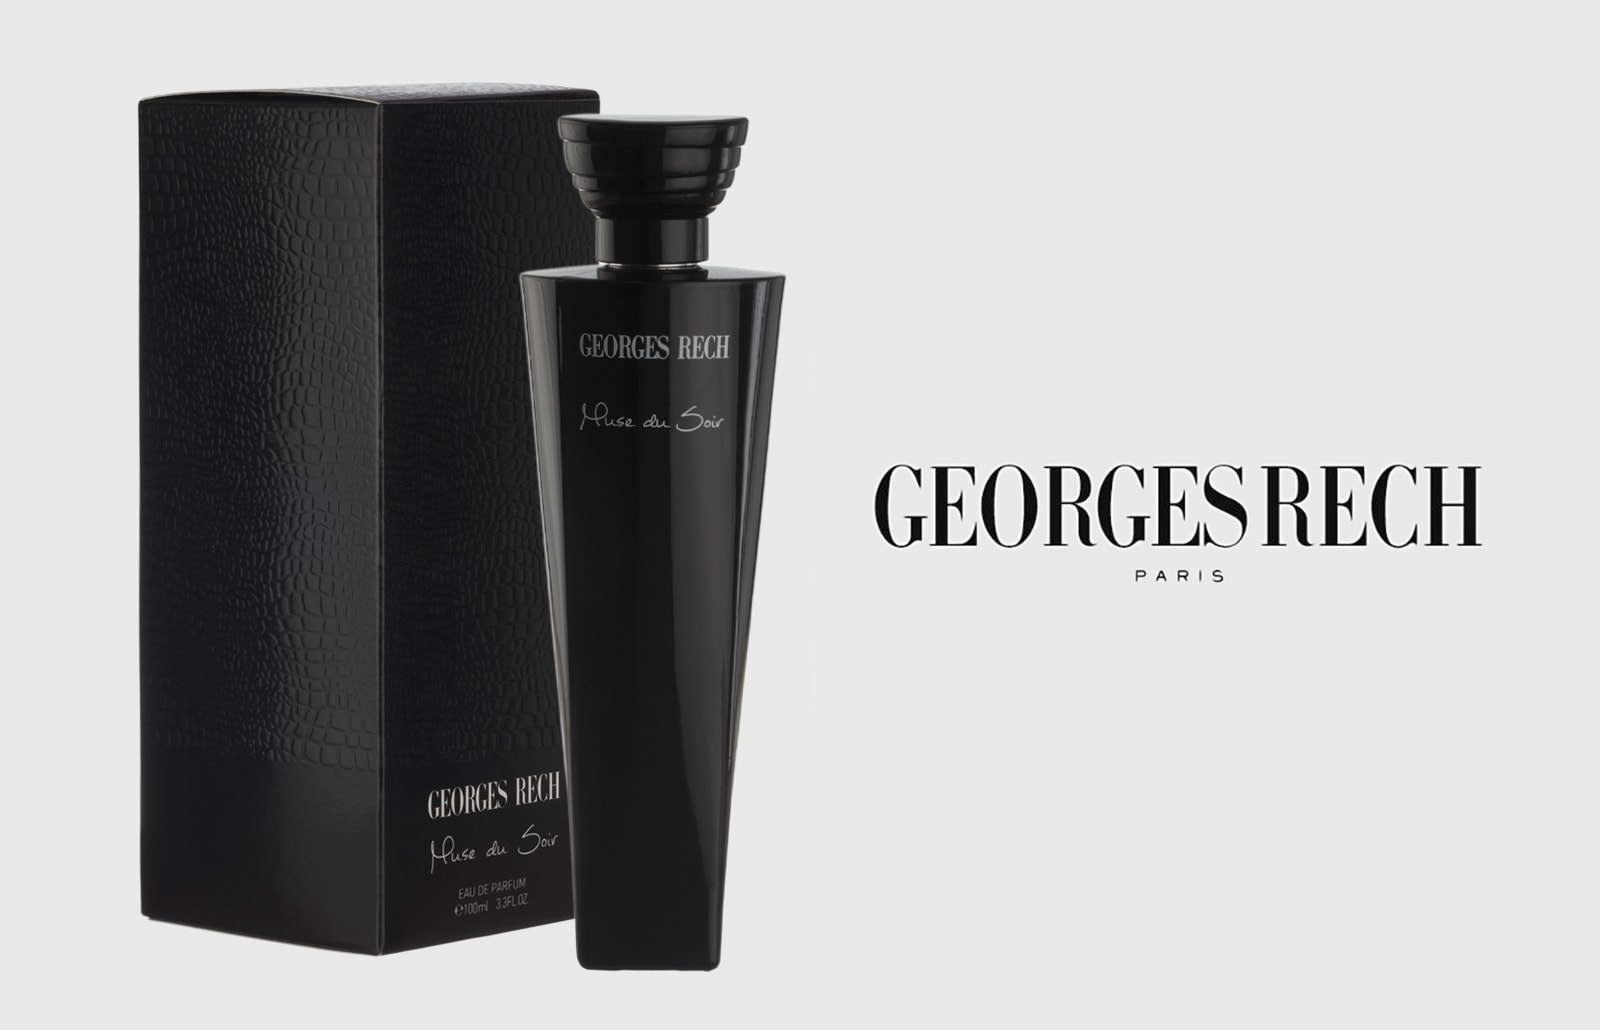 Georges-Rech-packshot-parfum-par-adrien-thibault-photographe-freelance-paris-pentax-studio